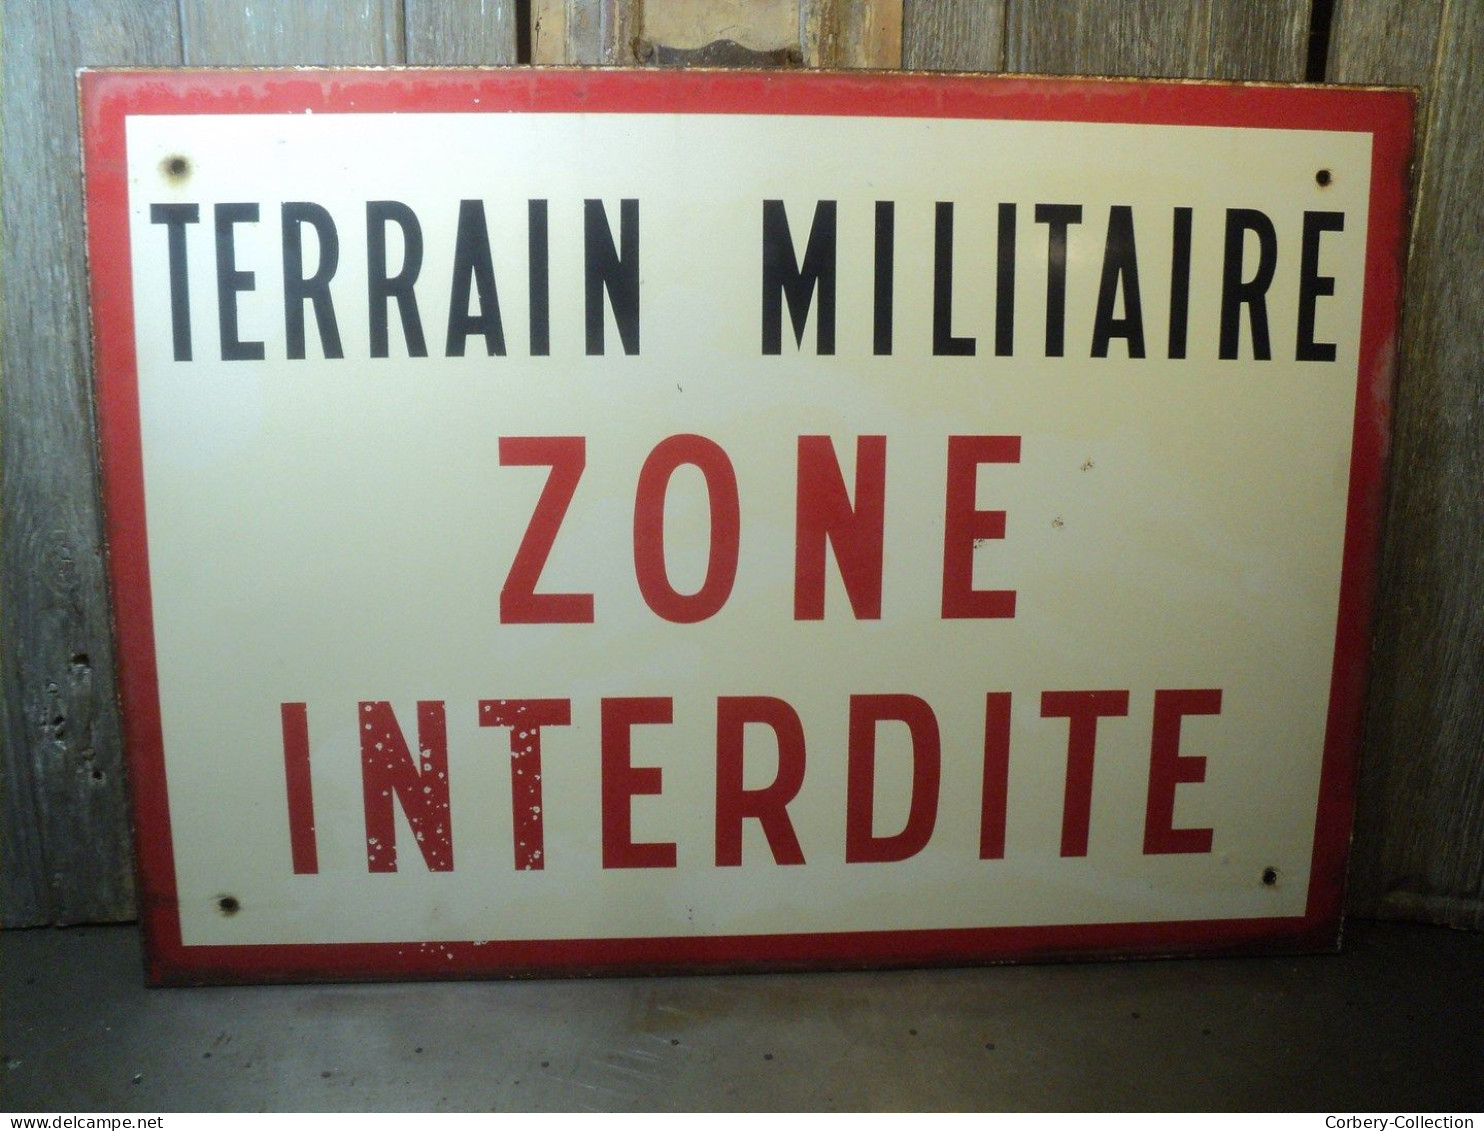 Ancienne Plaque Émaillée Terrain Militaire Zone Interdite Ca1970 - Enameled Signs (after1960)